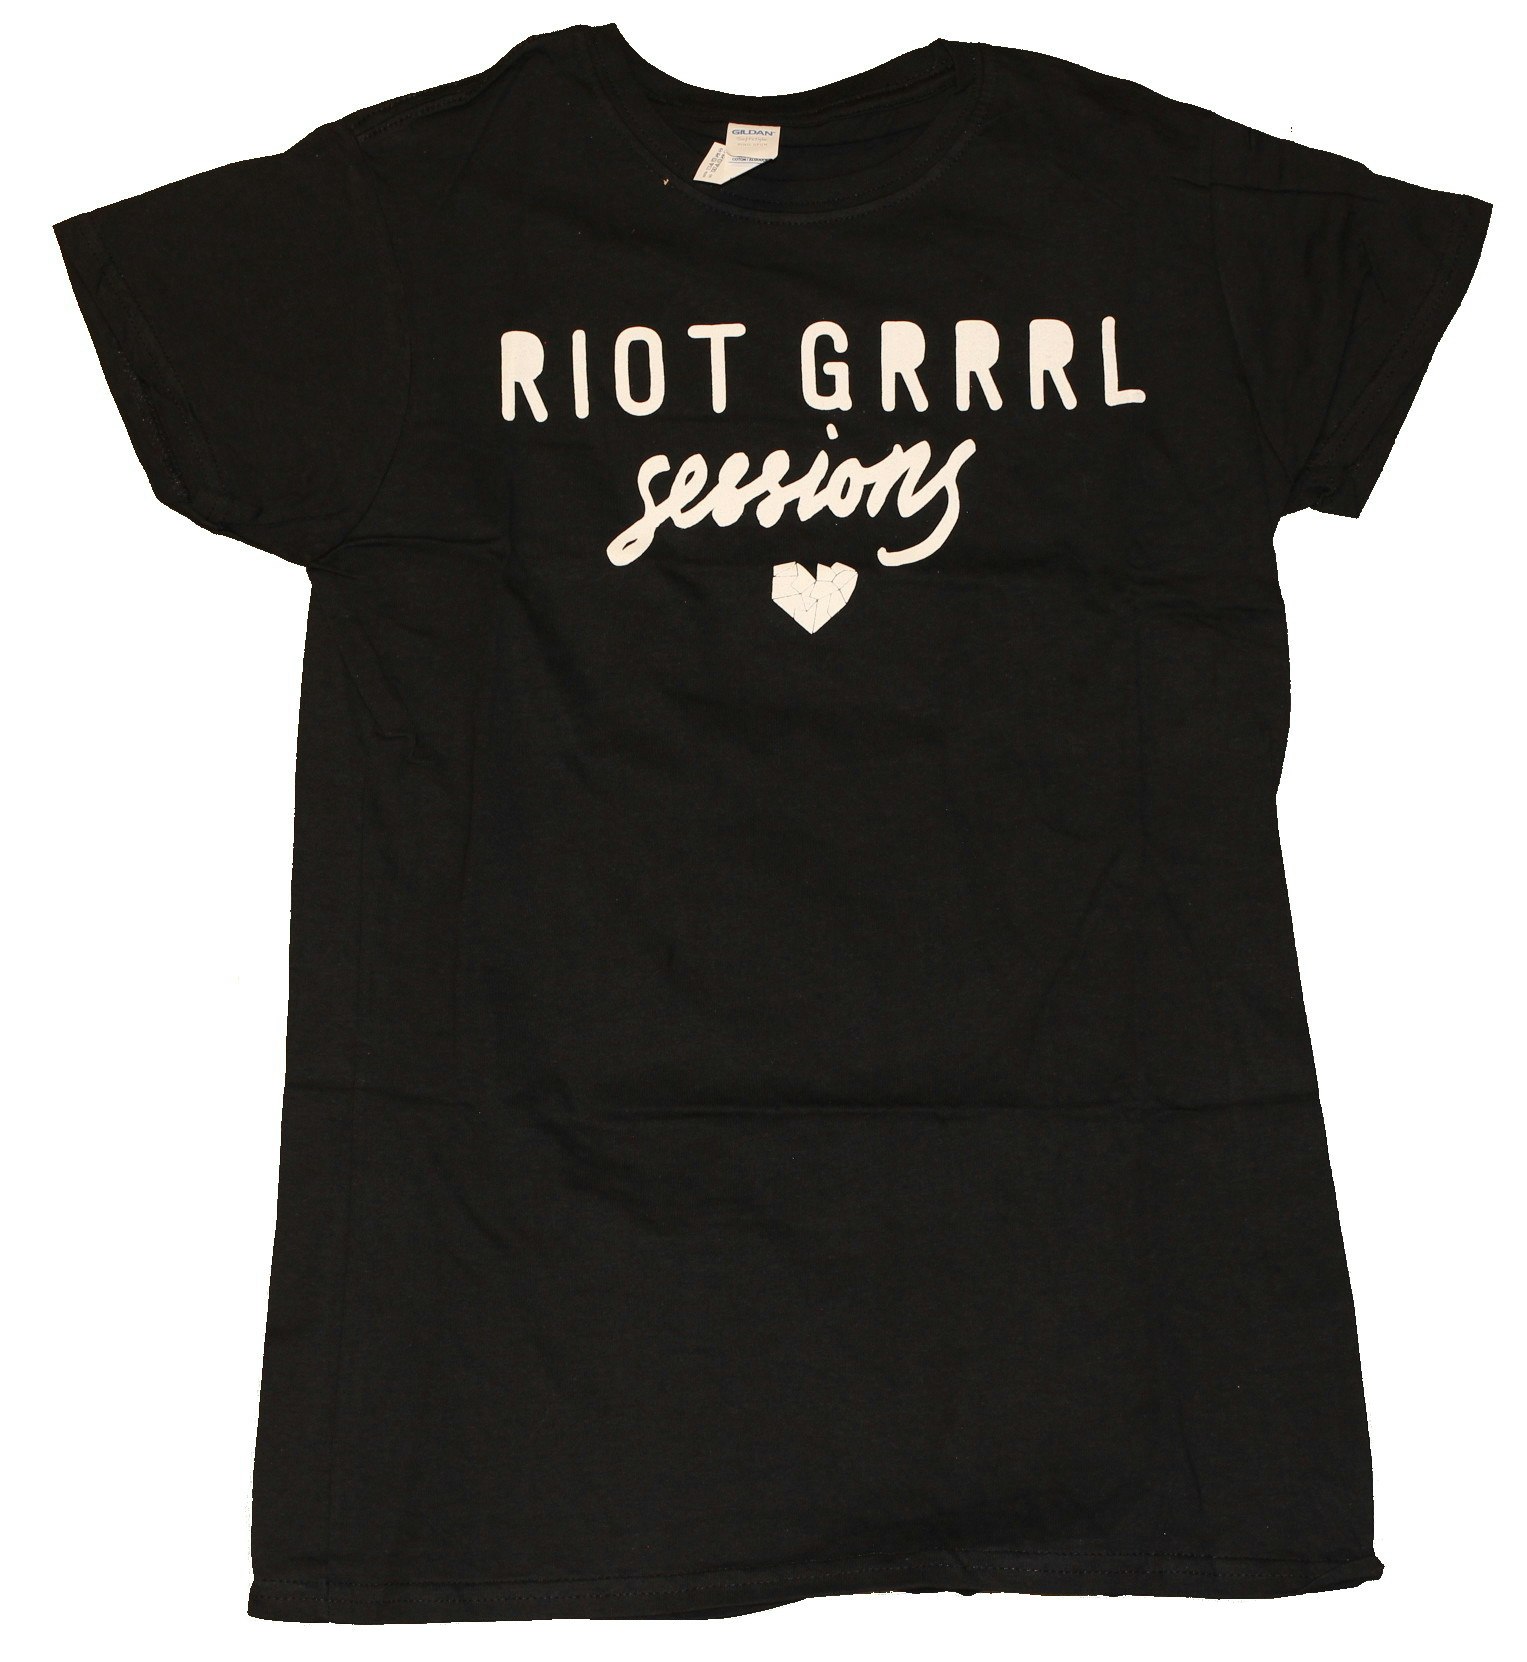 Riot grrrl sessions Girlie t-shirt